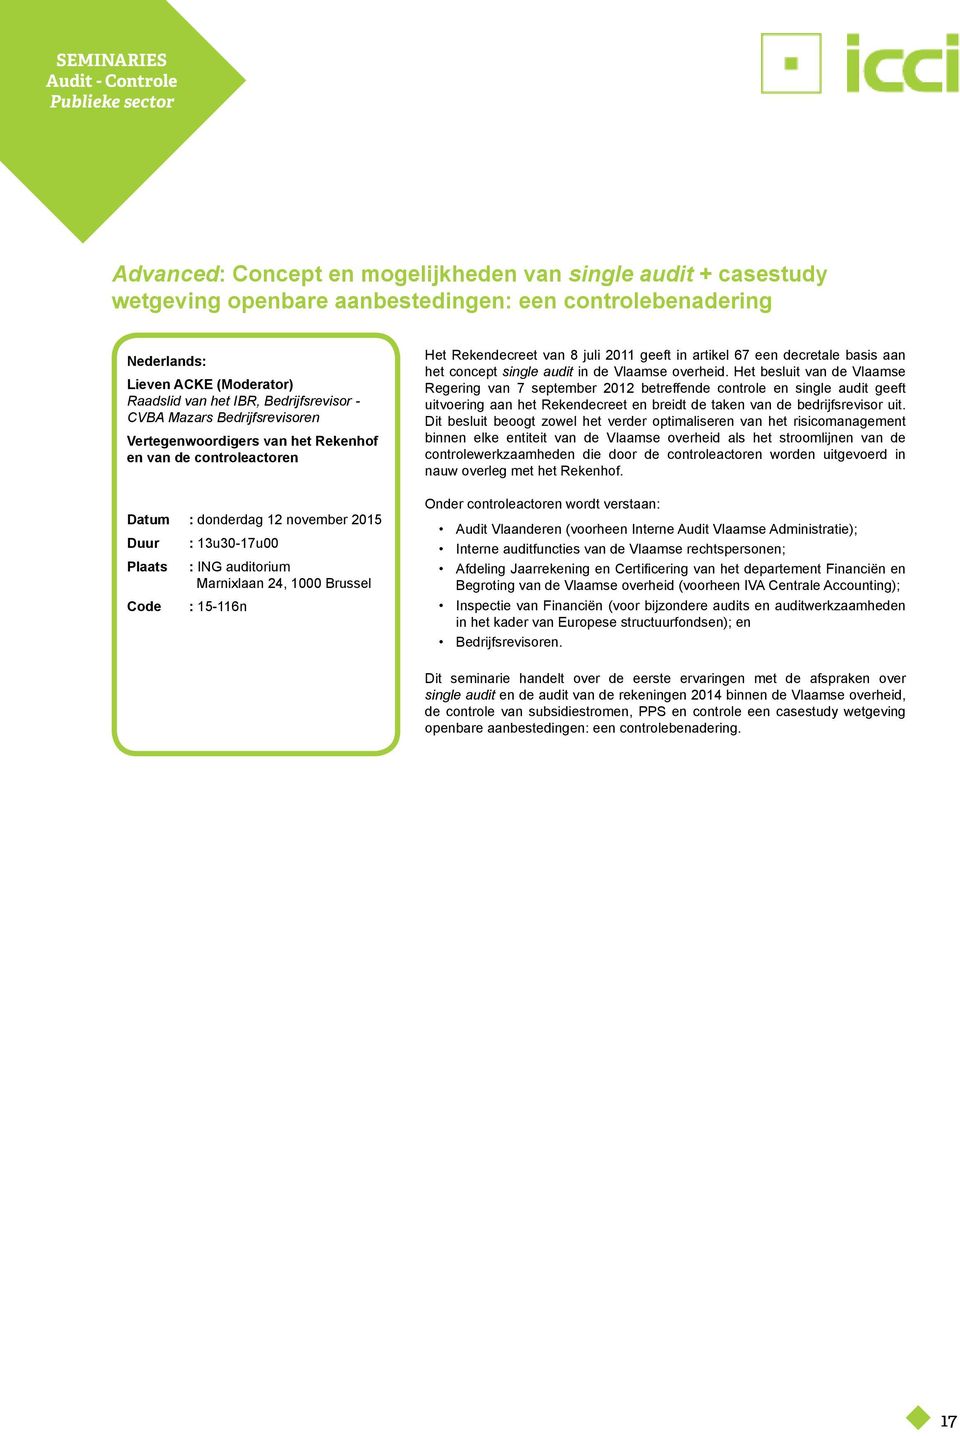 Marnixlaan 24, 1000 Brussel Code : 15-116n Het Rekendecreet van 8 juli 2011 geeft in artikel 67 een decretale basis aan het concept single audit in de Vlaamse overheid.